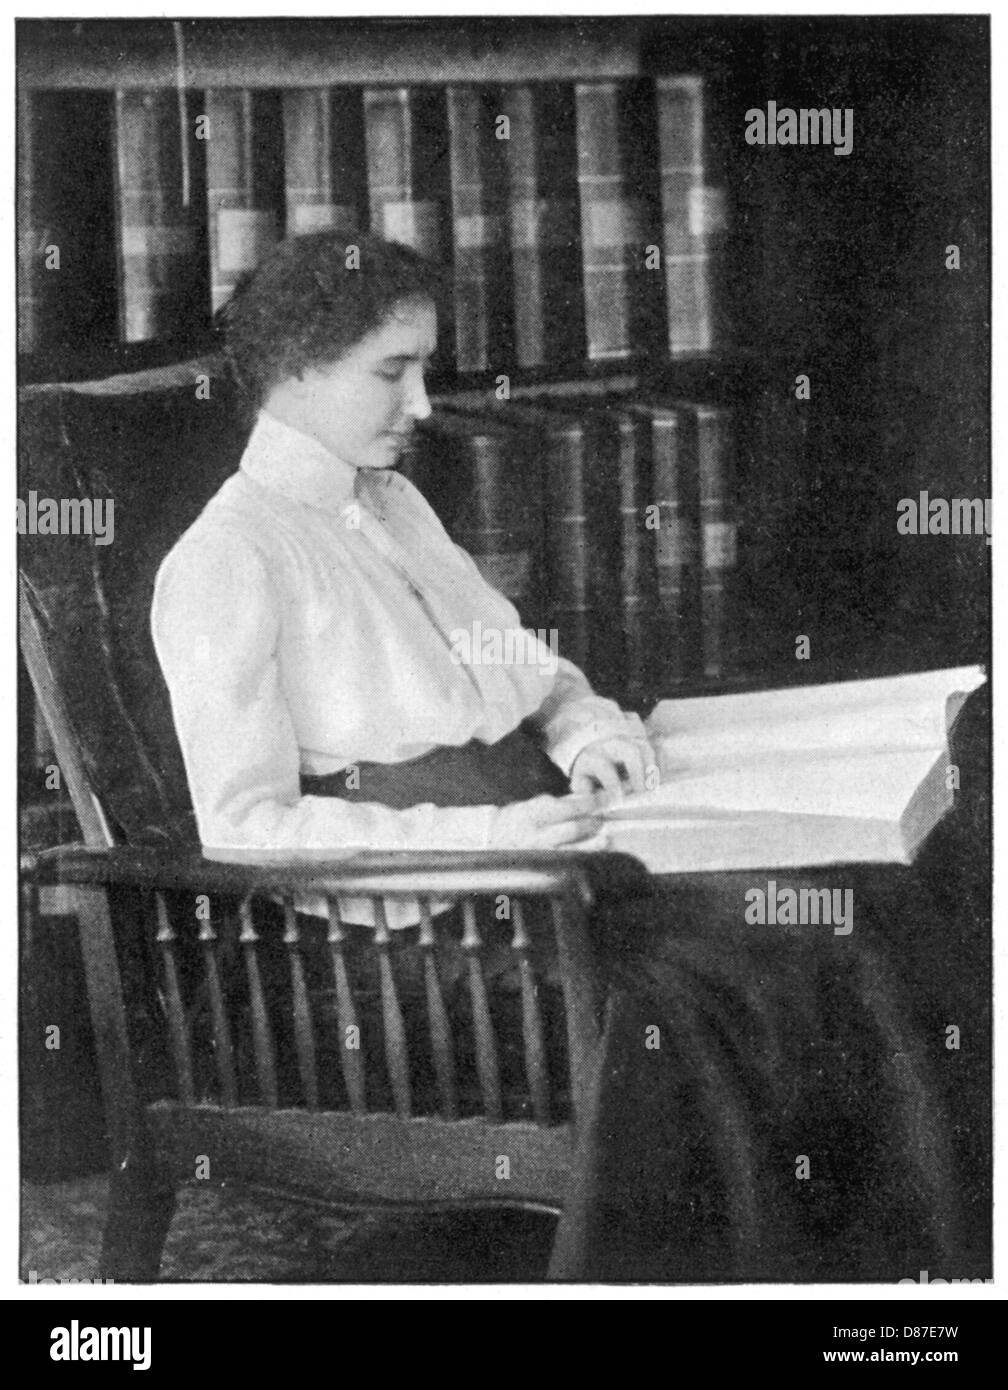 Helen Keller lesen Braille Stockfotografie - Alamy